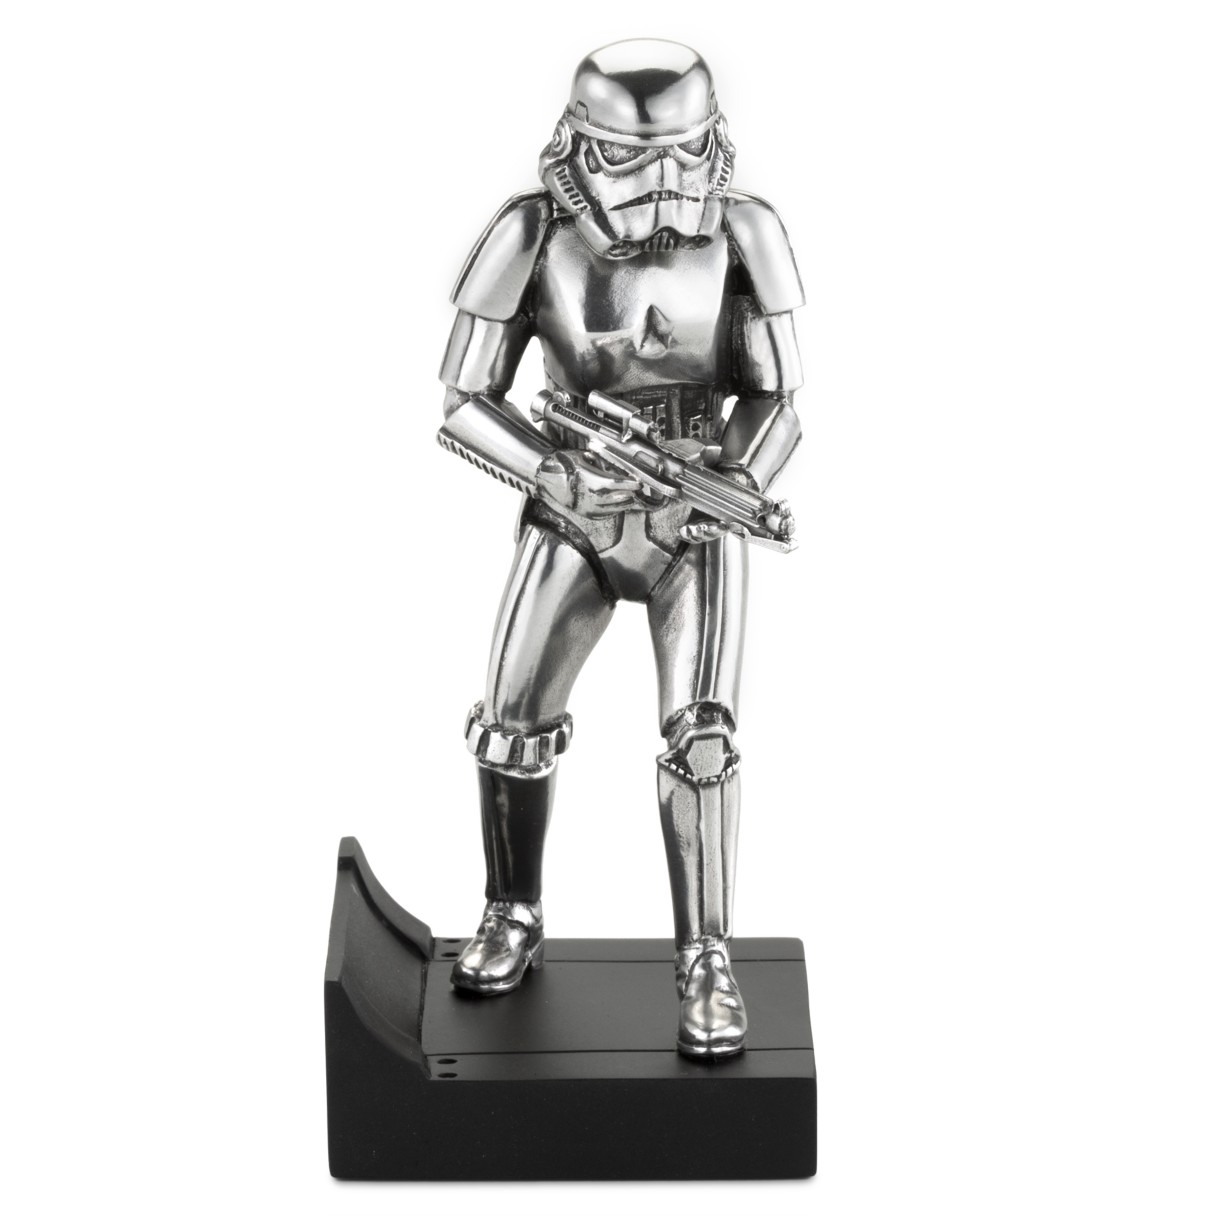 Stormtrooper Pewter Figurine by Royal Selangor – Star Wars